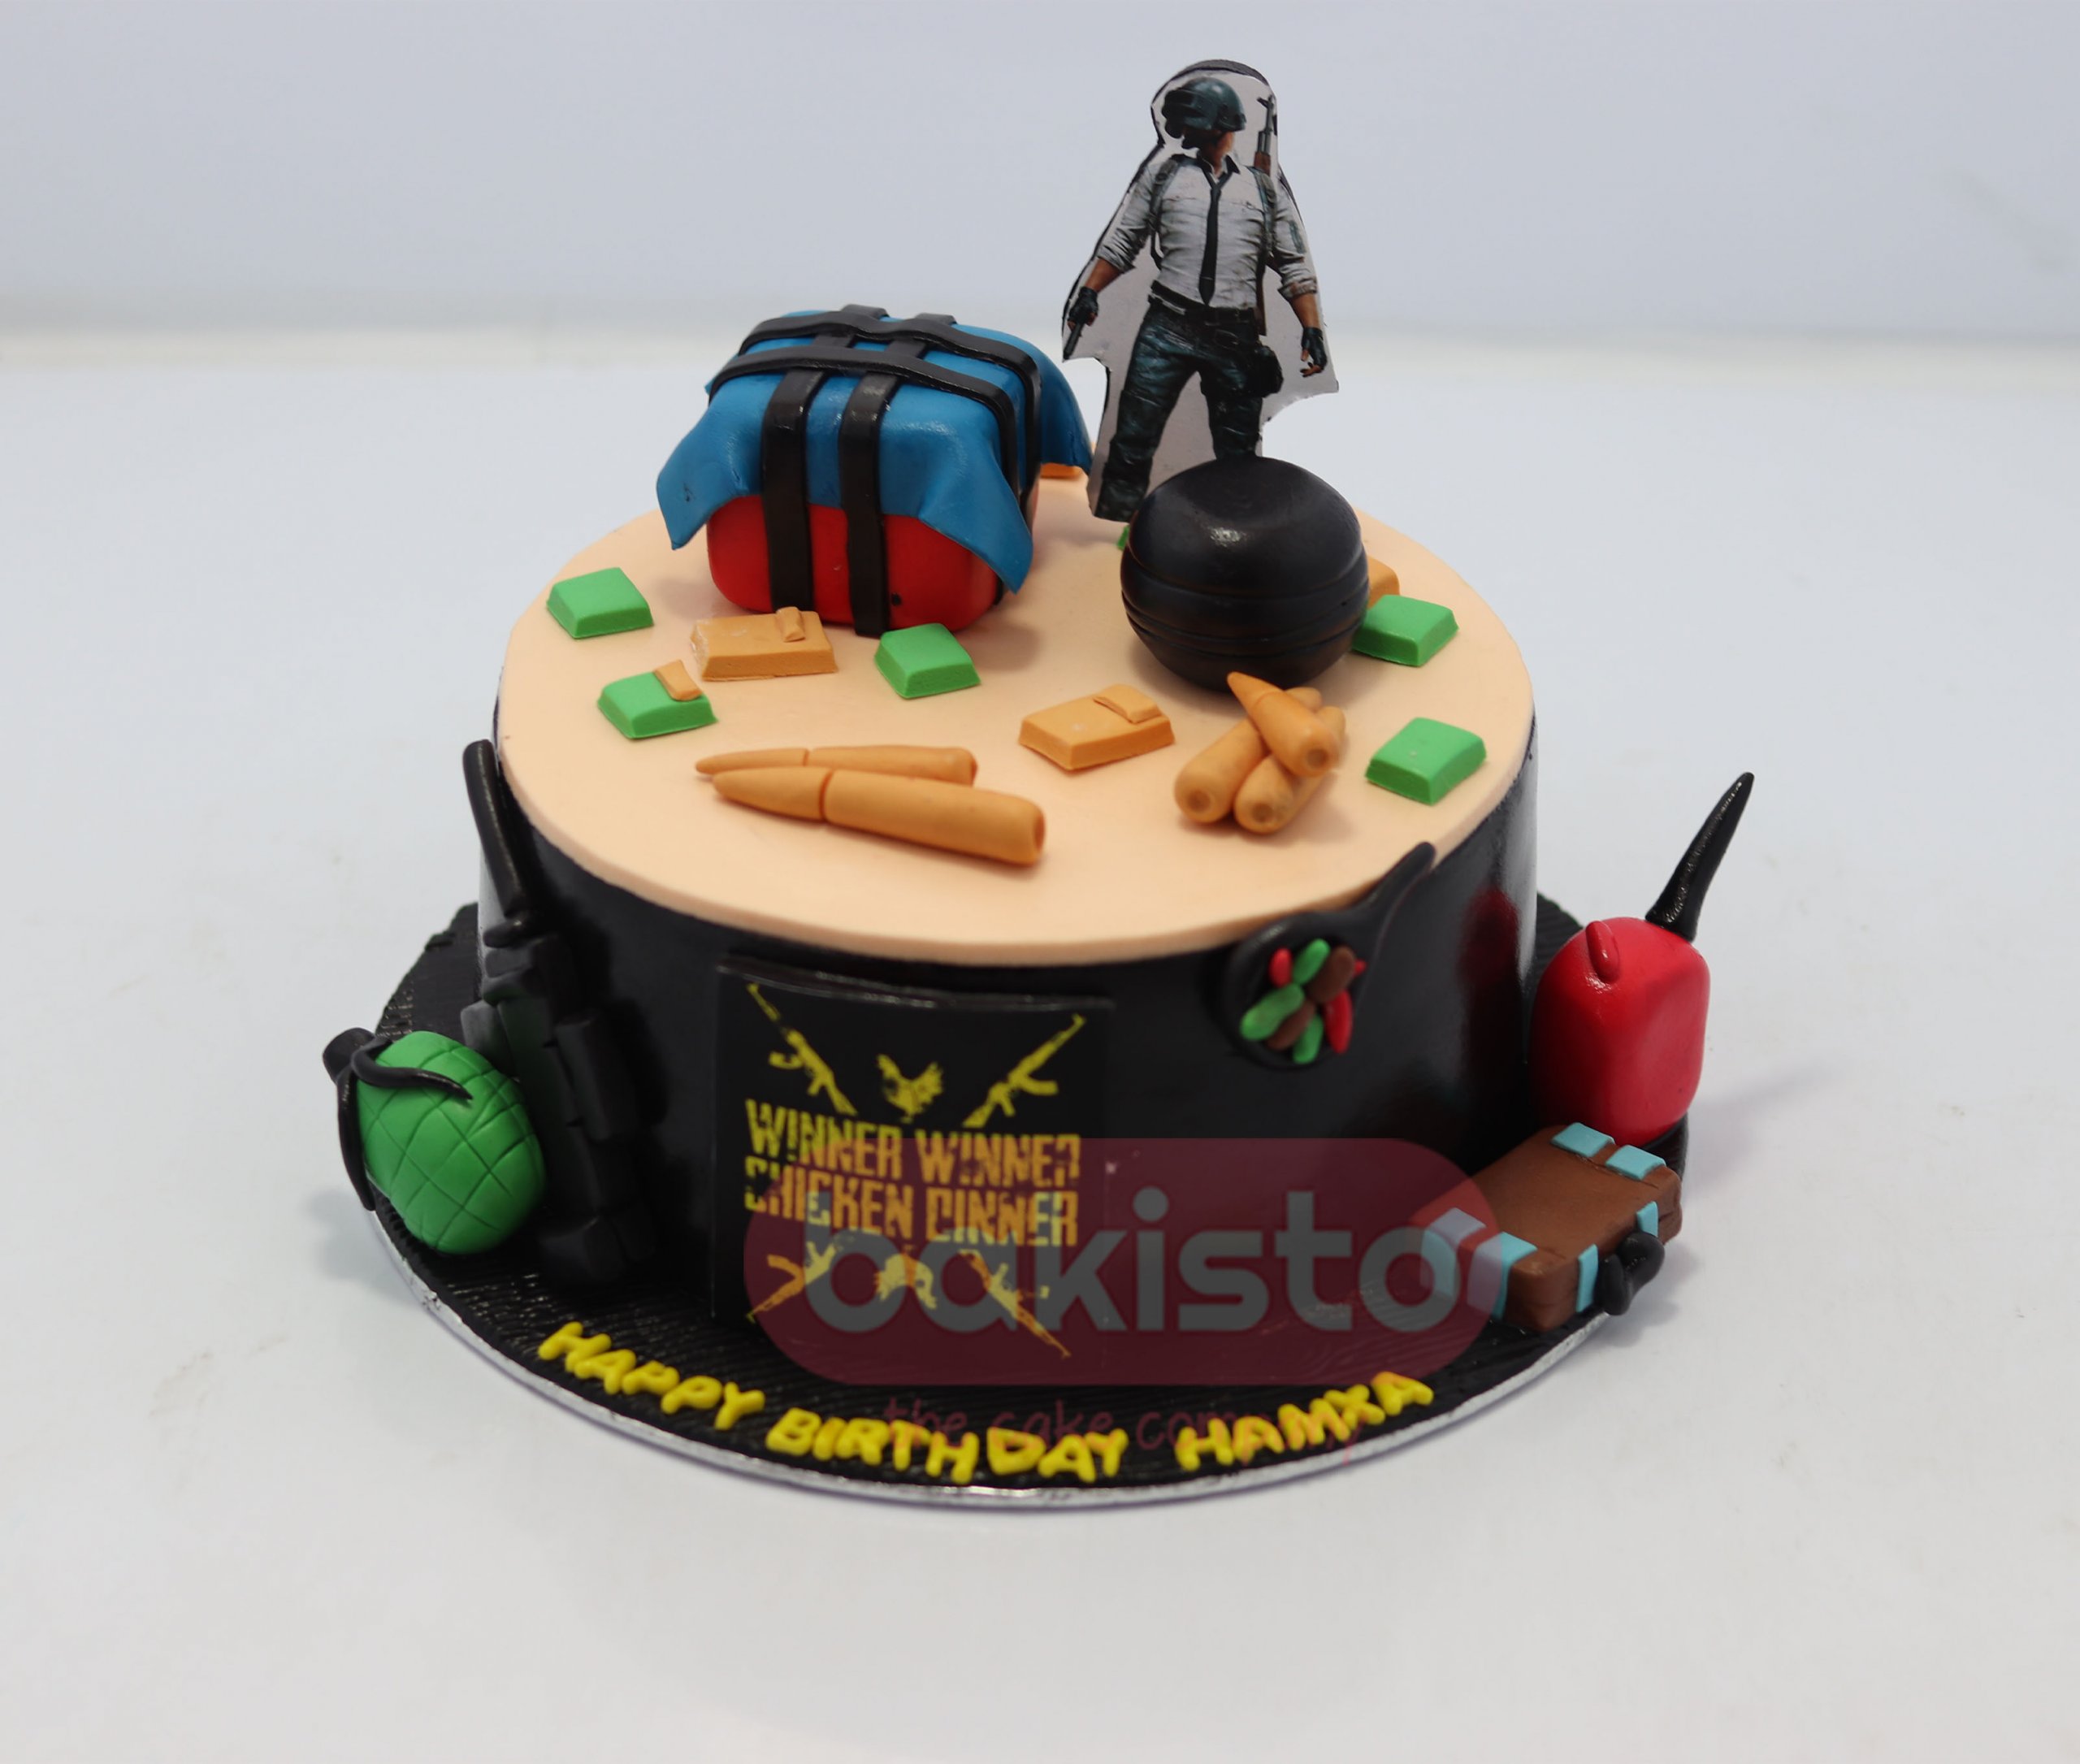 Buy battle ground themed cake online | battle ground themed cake online |  Tfcakes